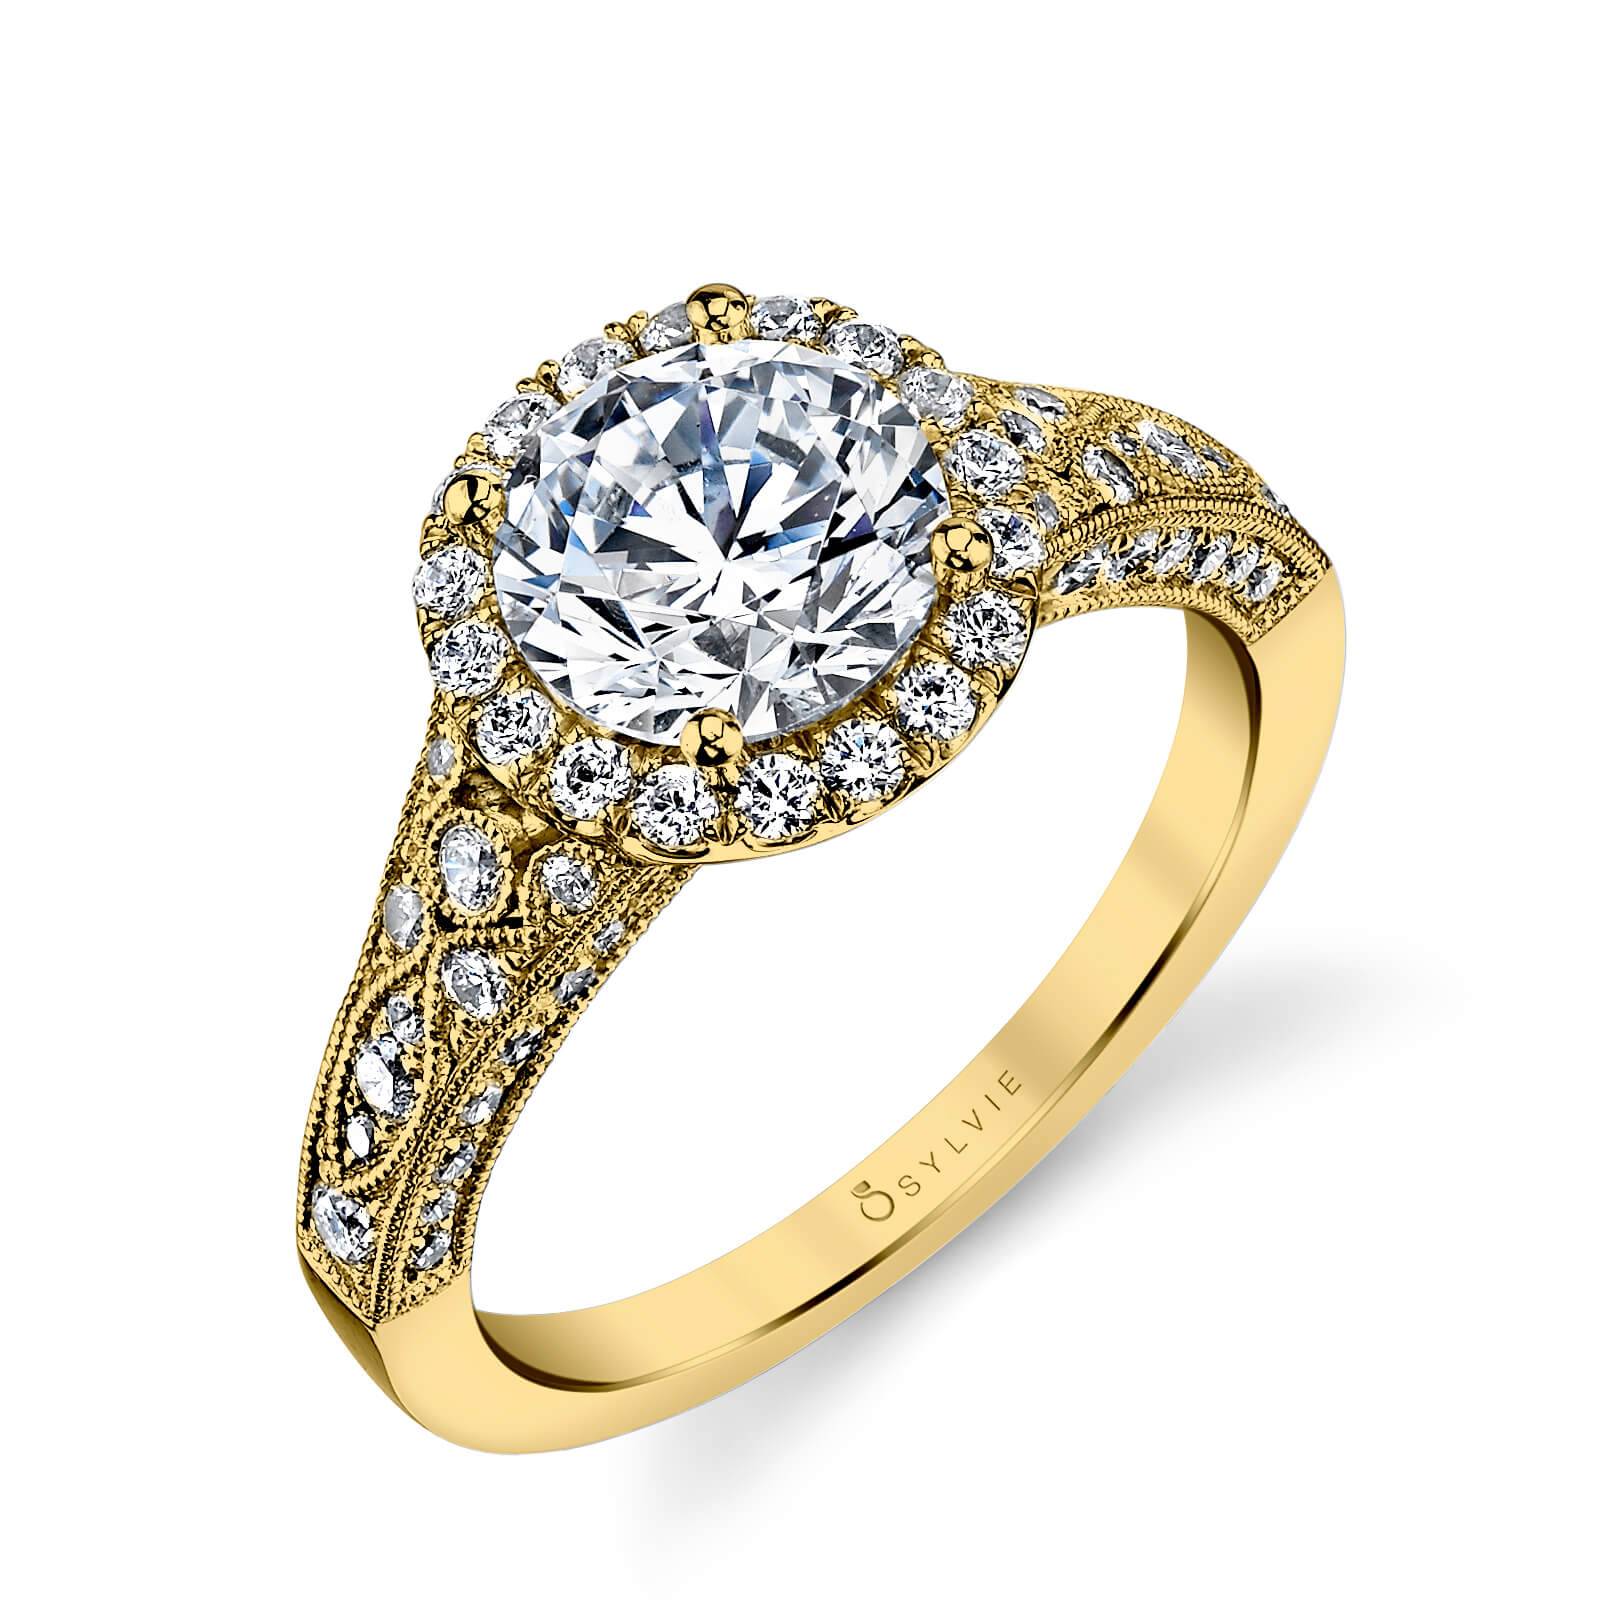 14K WG VINTAGE STYLE HALO DIAMOND RING – Kimberly's Diamond Corner